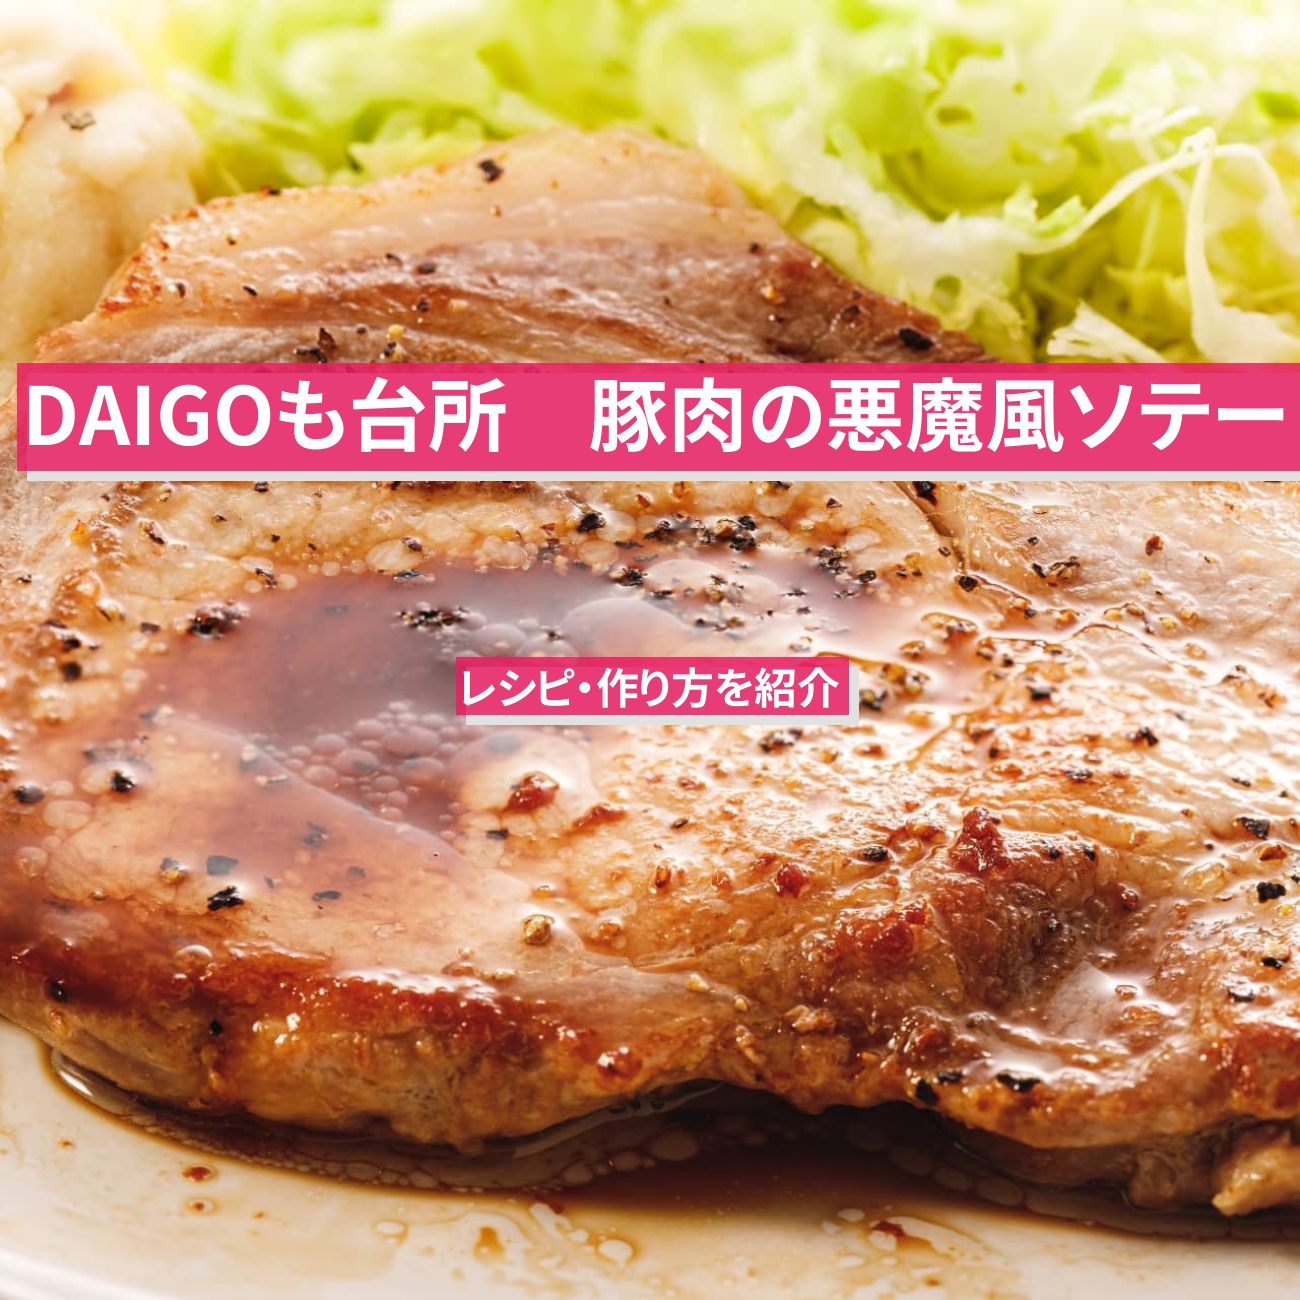 【DAIGOも台所】『豚肉の悪魔風ソテー』のレシピ・作り方を紹介〔ダイゴも台所〕